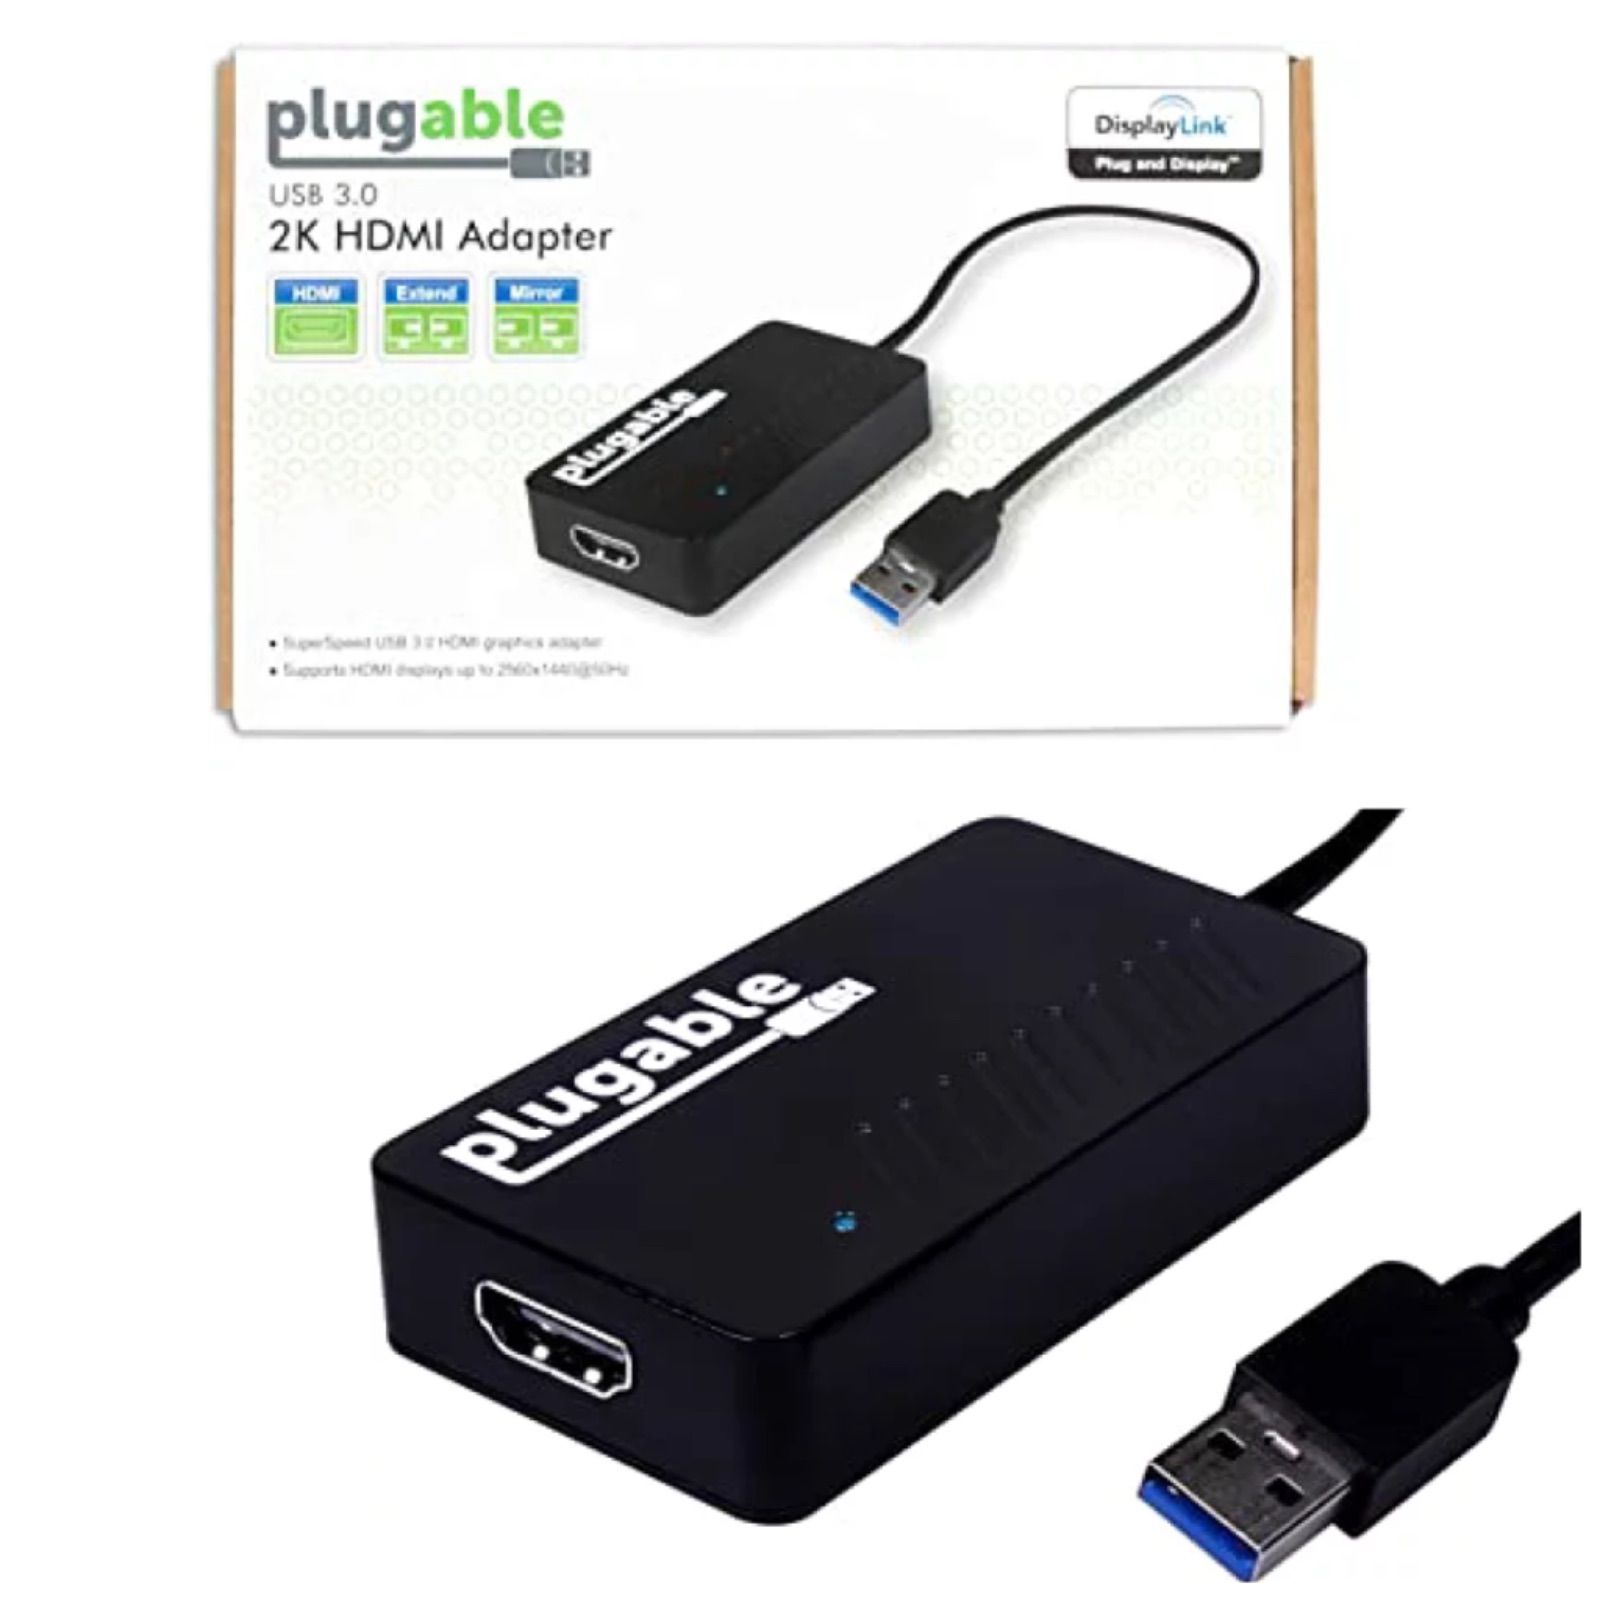 Plugable USB3.0 ディスプレイアダプタ HDMI 2K 1080p 対応 - USB グラフィック変換アダプタ DisplayLink  チップ採用 (230313412)